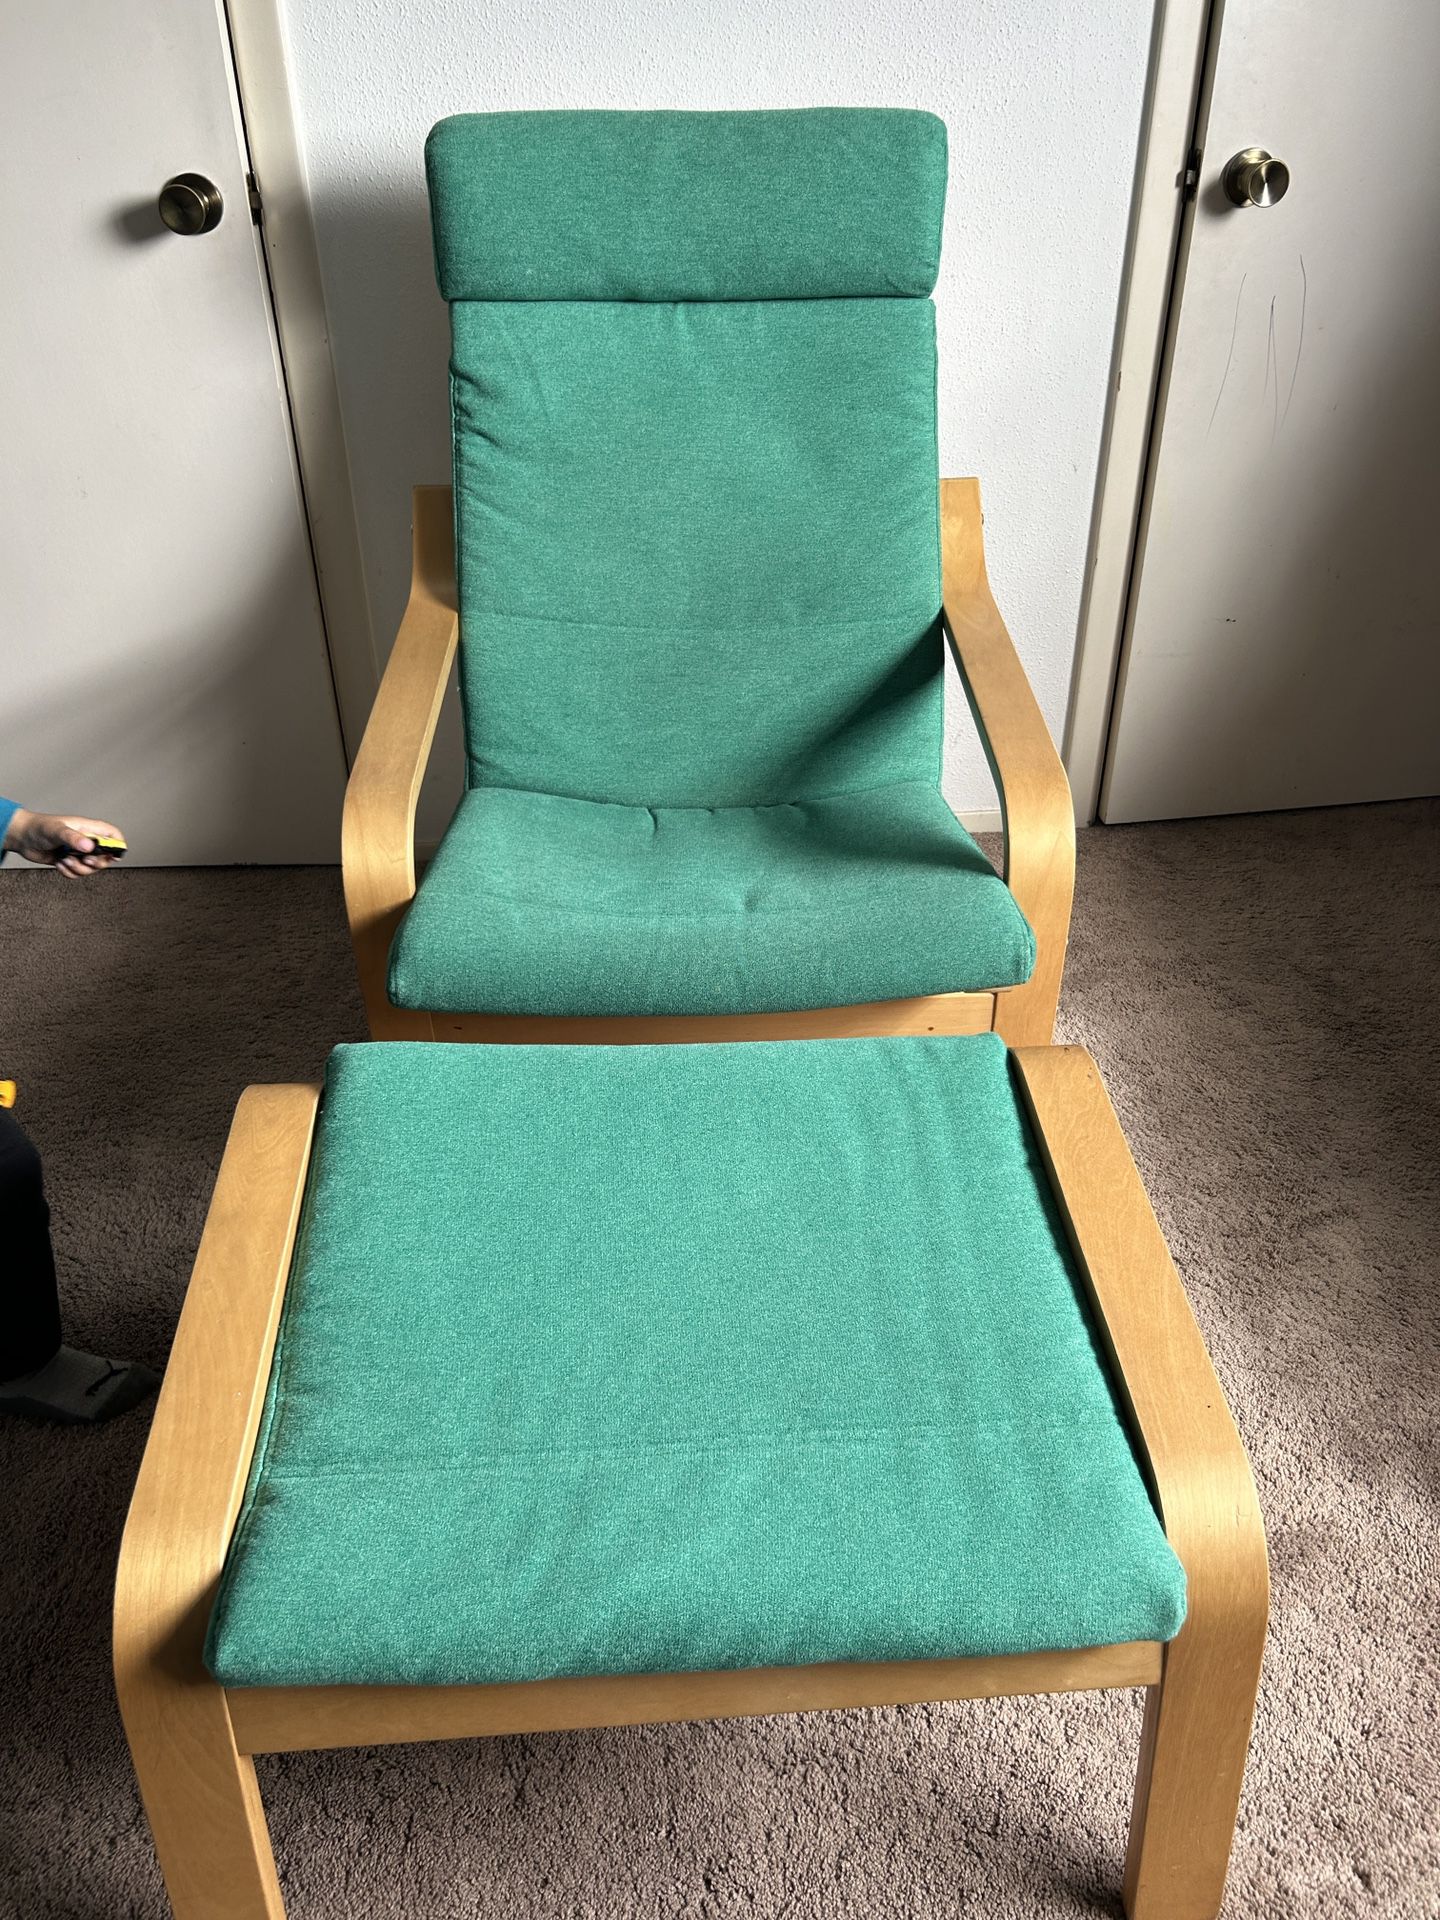 Ikea Poang Chair And Ottoman